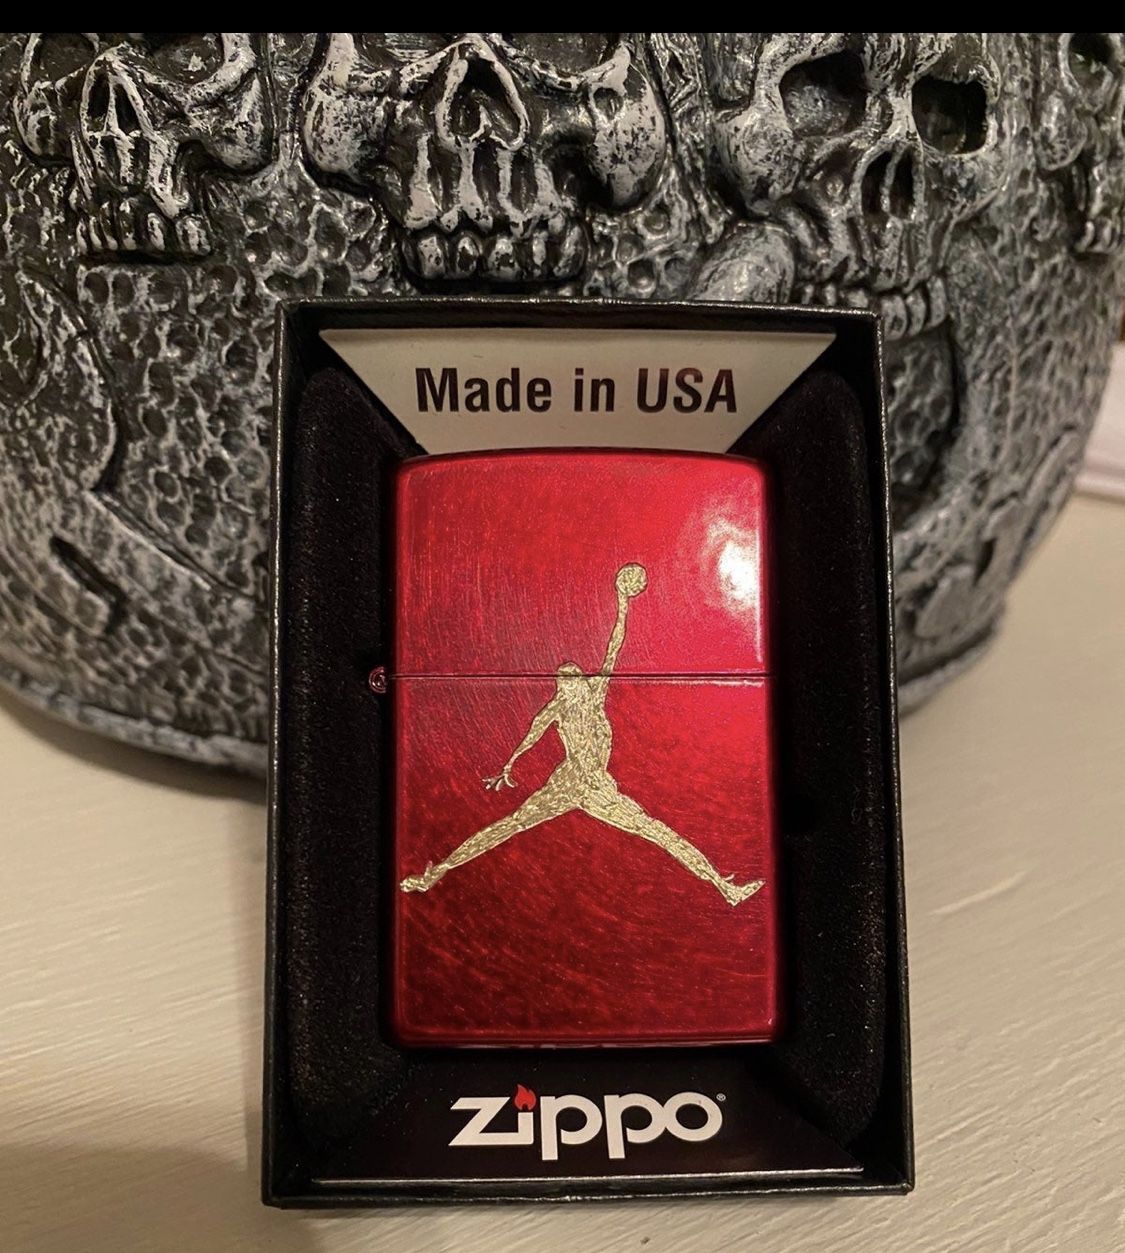 1-Zippo engraved custom MICHAEL JORDAN candy apple red lighter